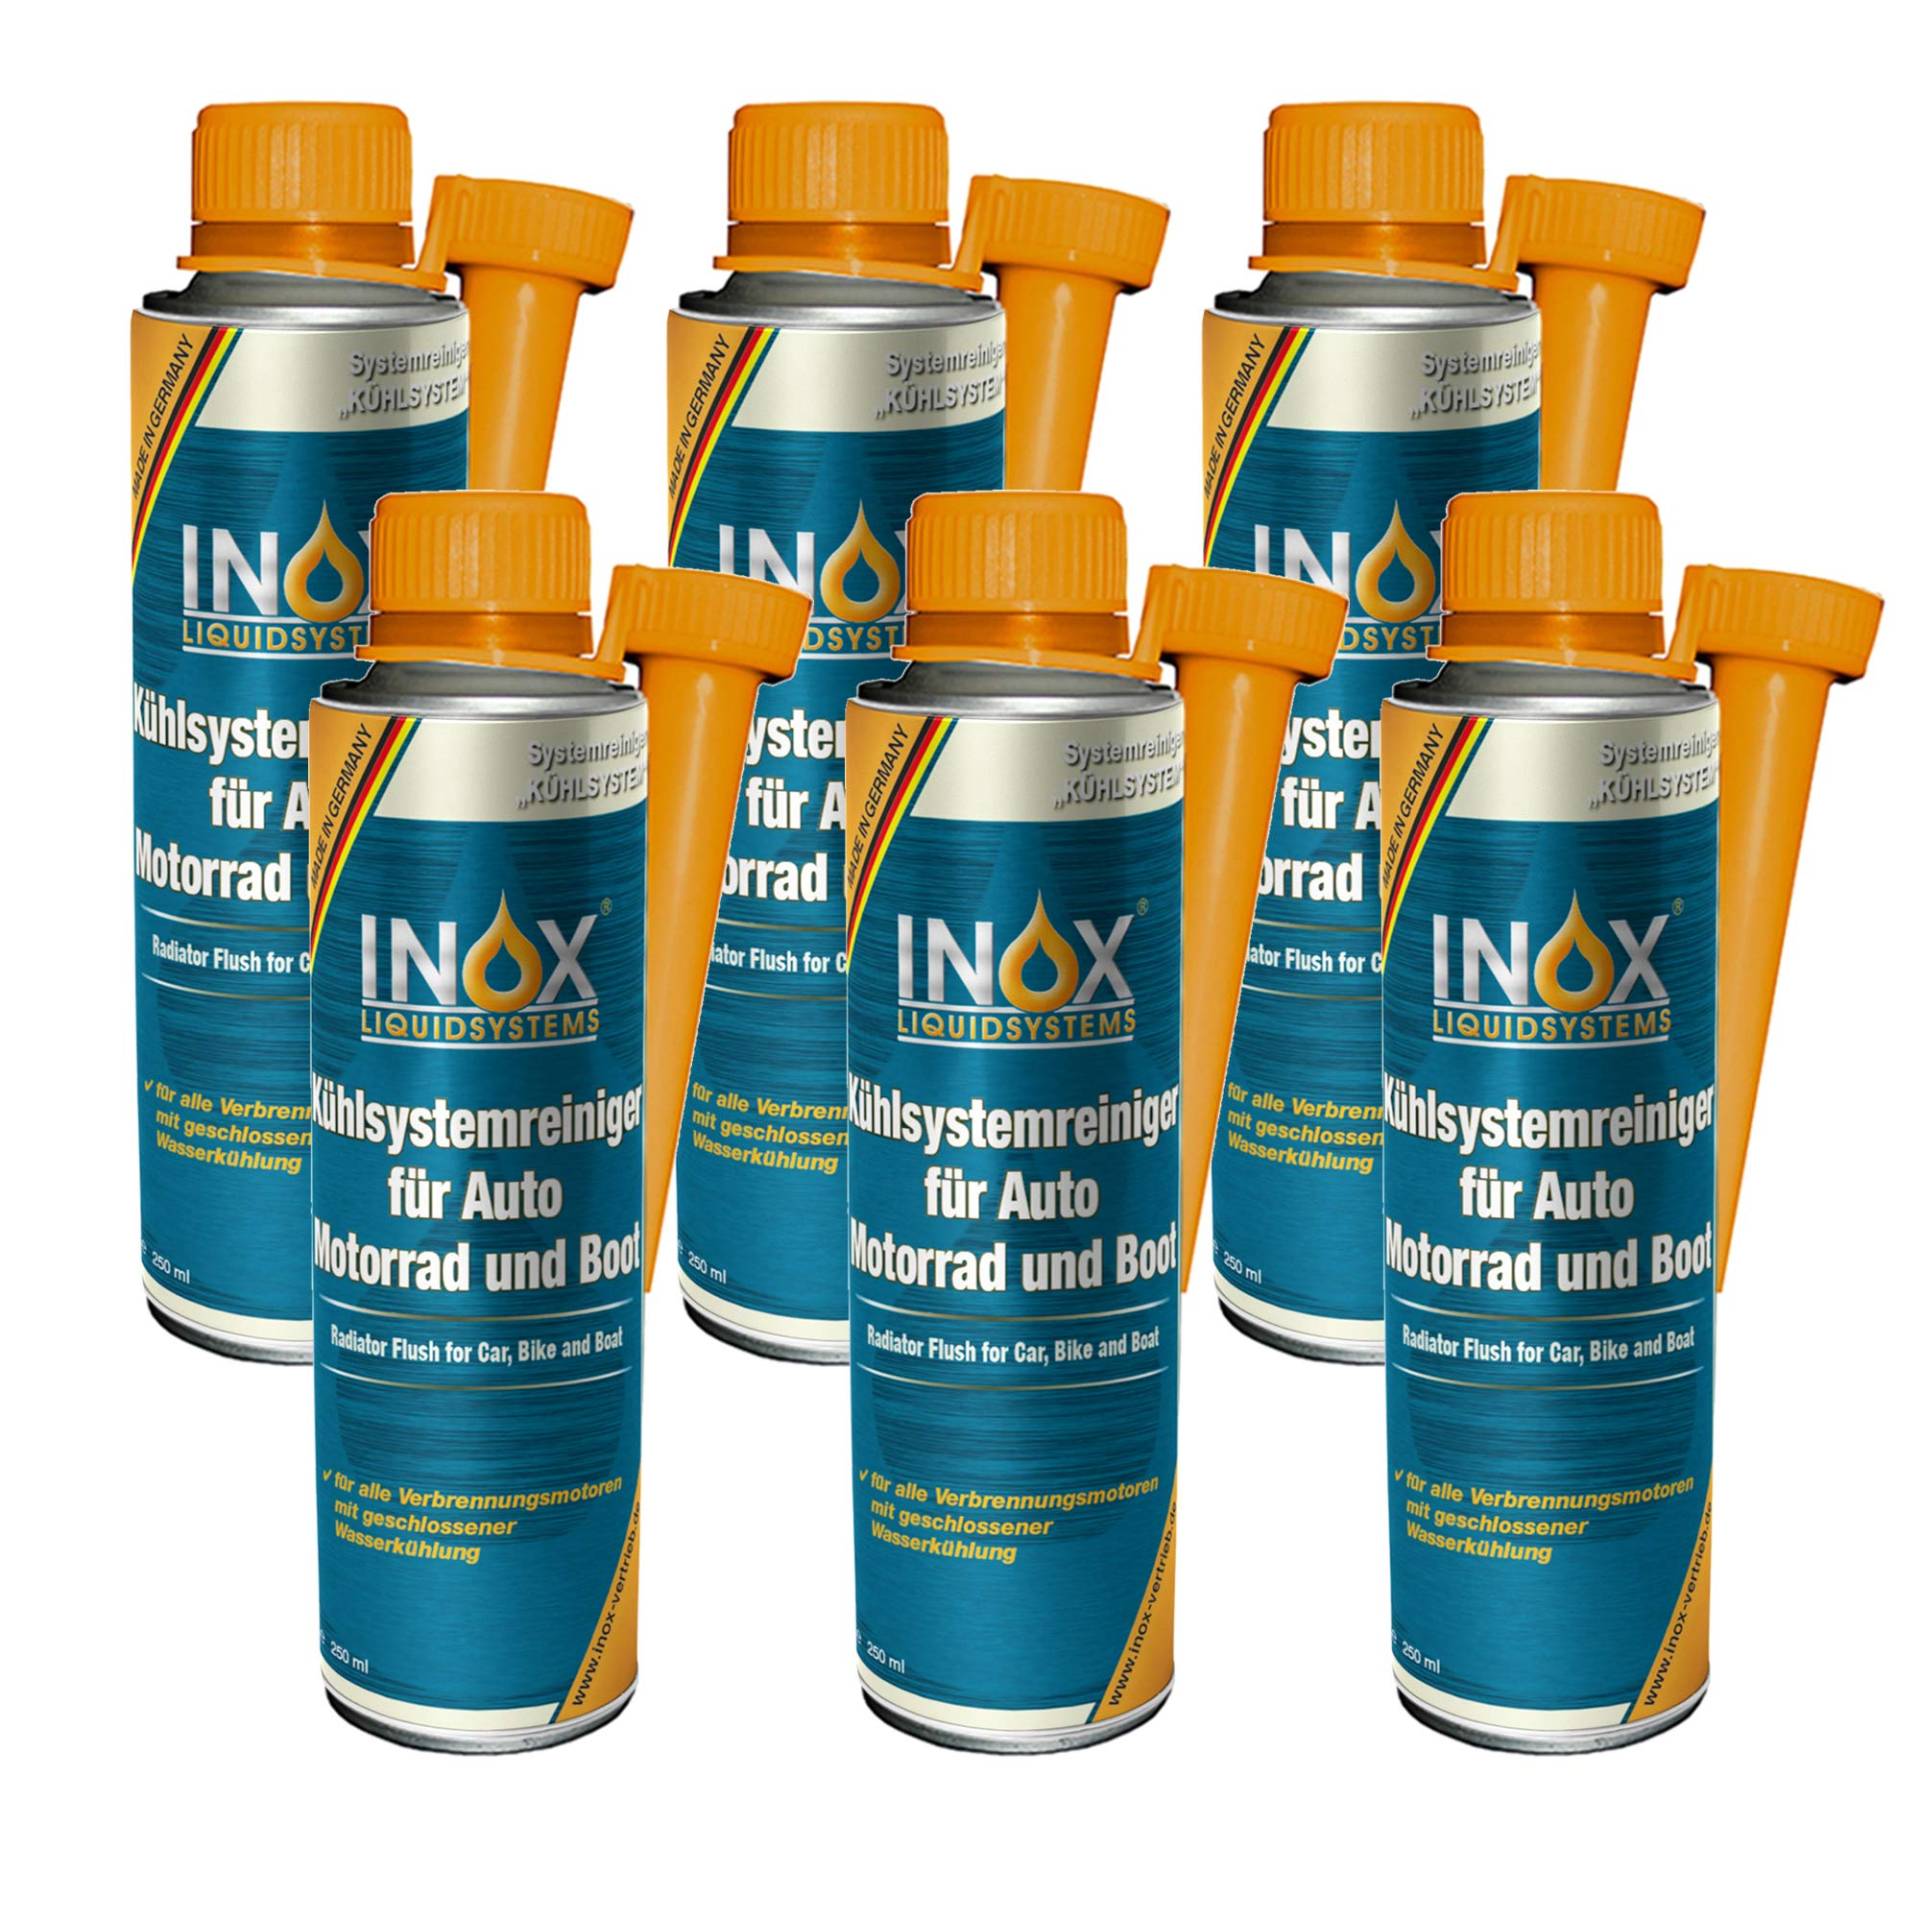 INOX® Kühlsystemreiniger Additiv, 6 x 250 ml - Kühlerschutz für Auto, Motor und Boot von INOX-LIQUIDSYSTEMS